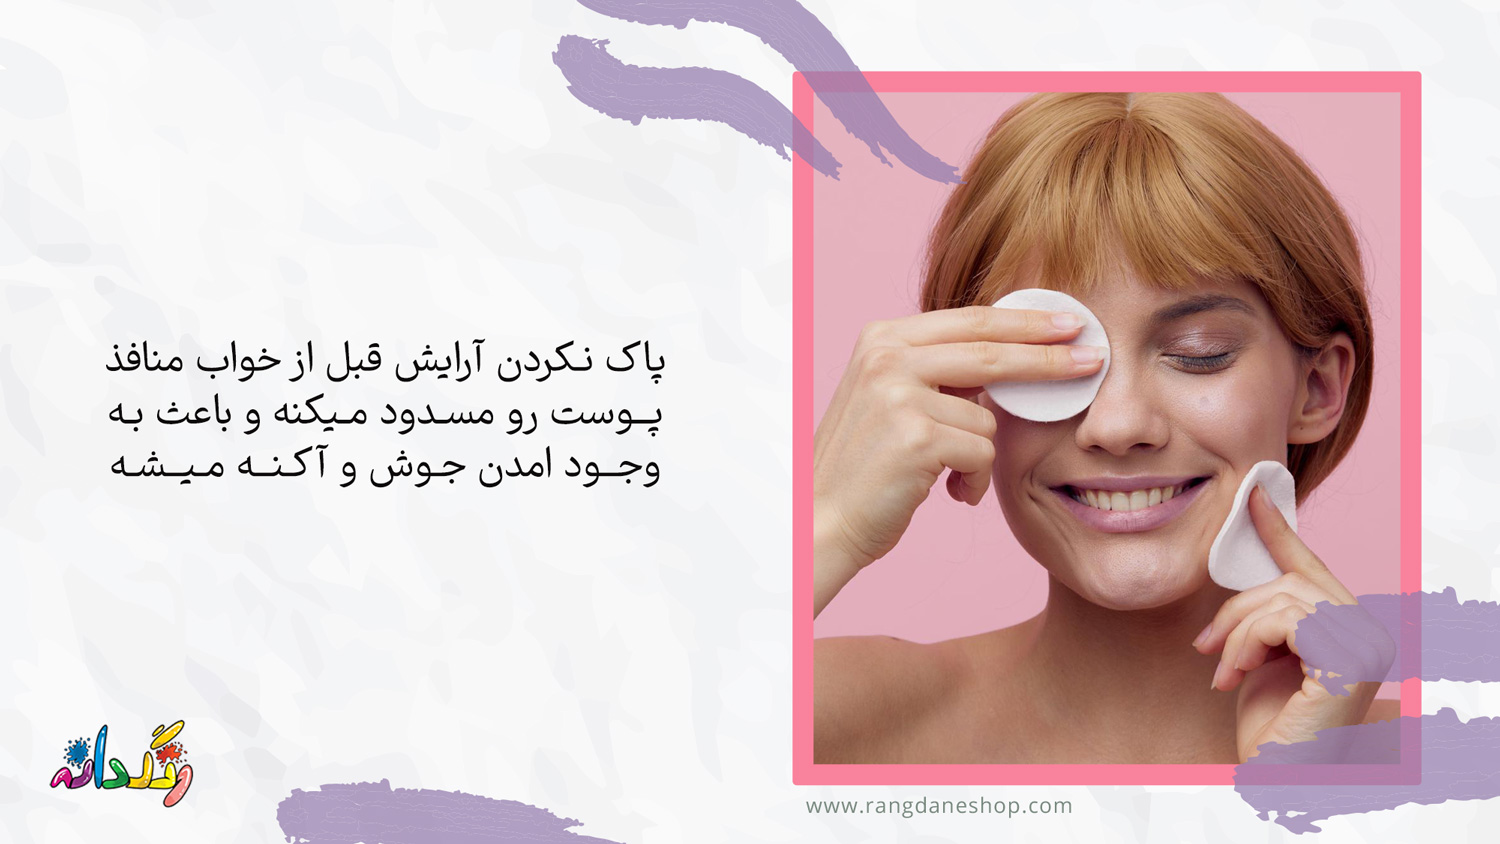  پاک کردن آرایش قبل از خواب یکی از راه های جلوگیری از عوارض لوازم ارایشی روی چشم و پوست